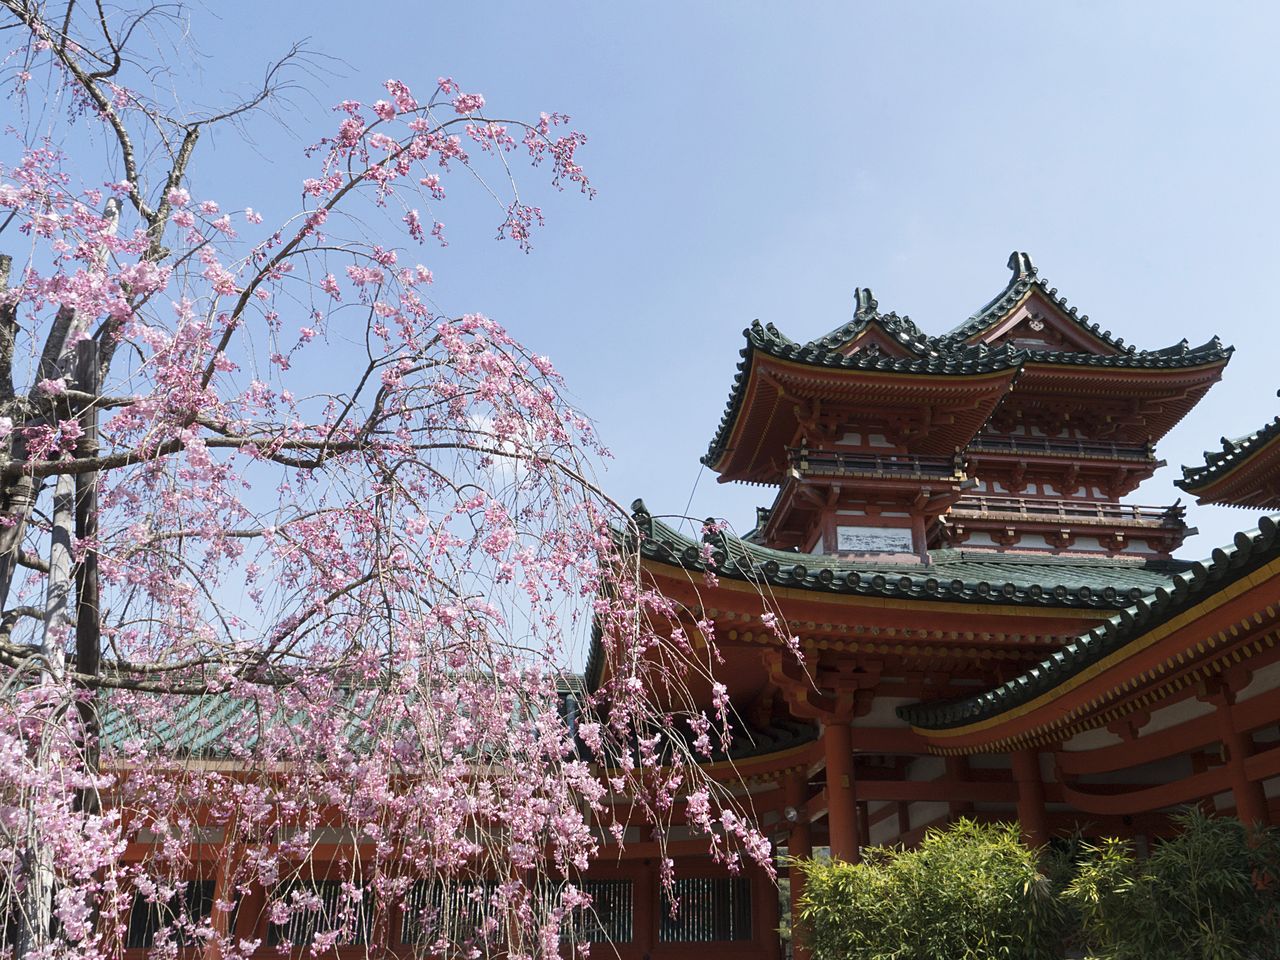 Башня Бякко (Белого тигра) над входом в парк внесена в список Важного культурного достояния Японии